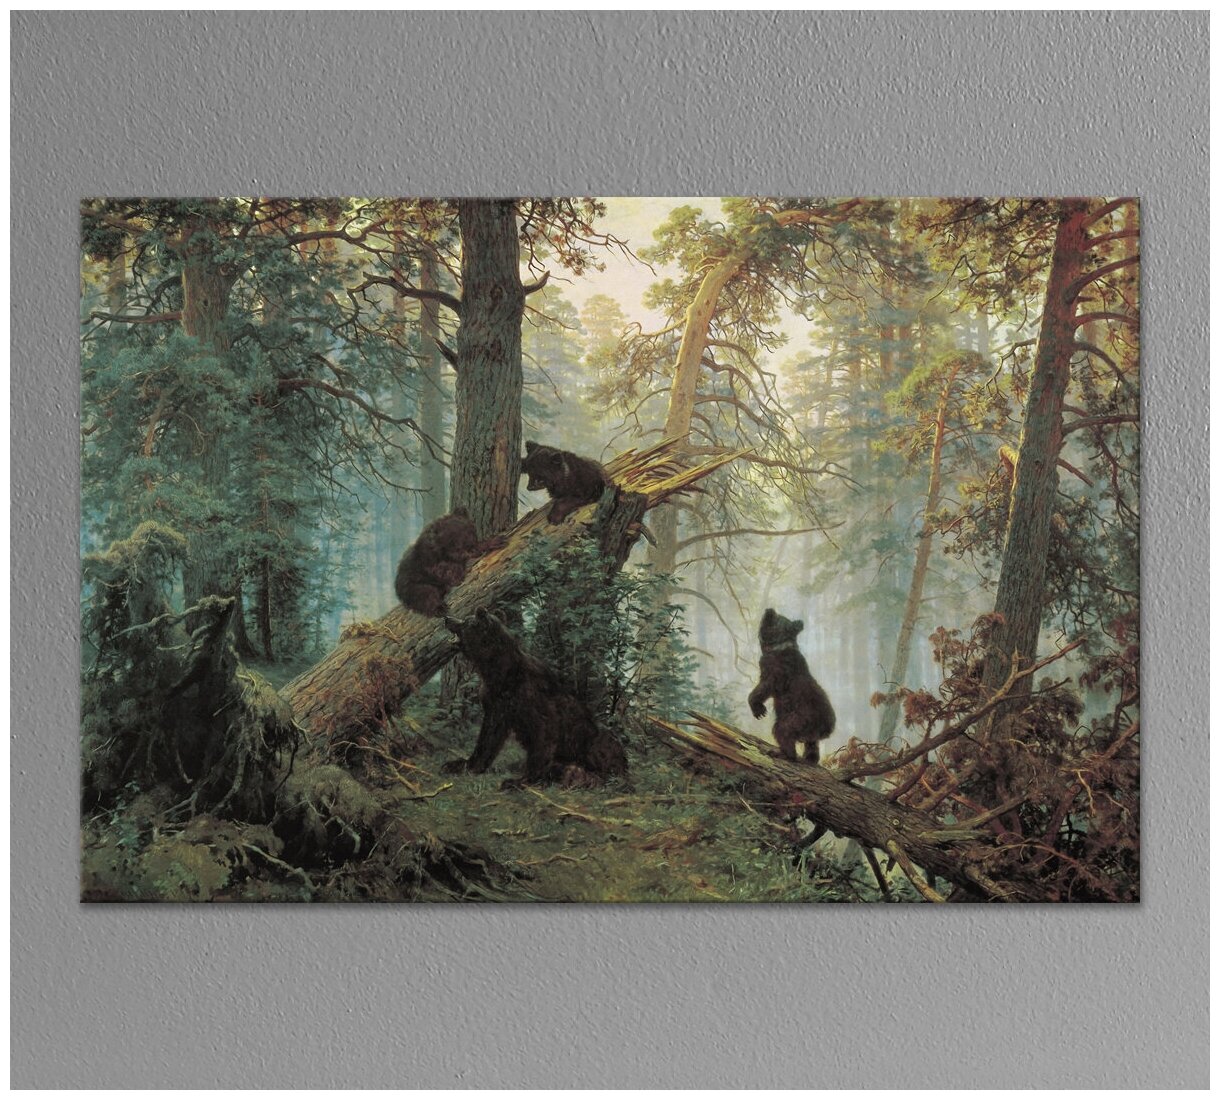 Картина для интерьера "Утро в сосновом лесу" Шишкин И. И. 40х60 см. натуральный холст. Коллекция - Российская живопись, реалистический пейзаж.